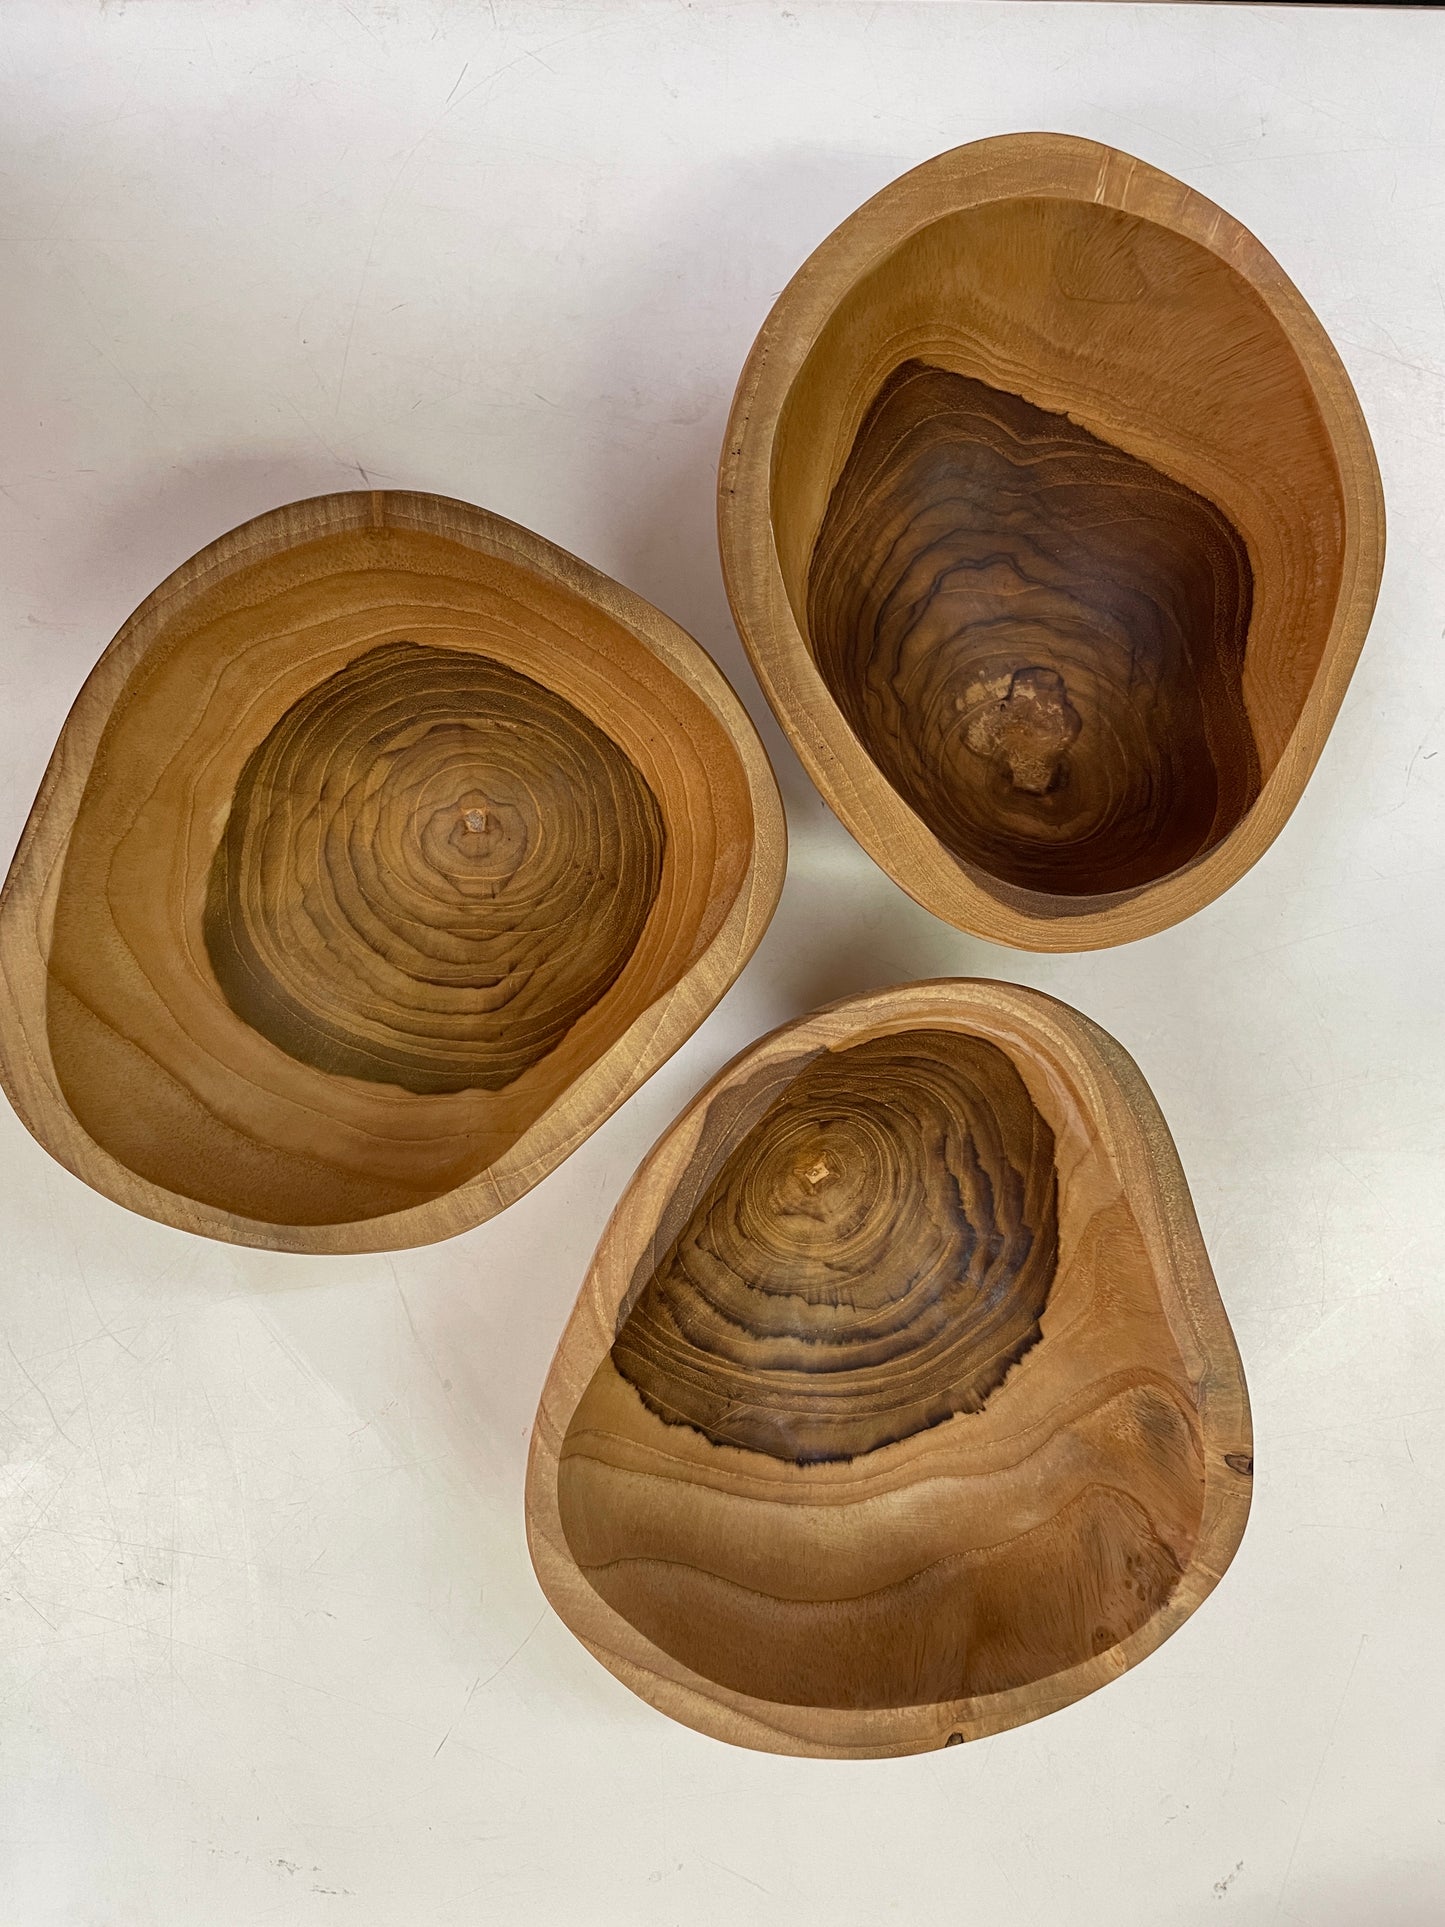 
                  
                    Papoose Wooden Teak Bowl
                  
                